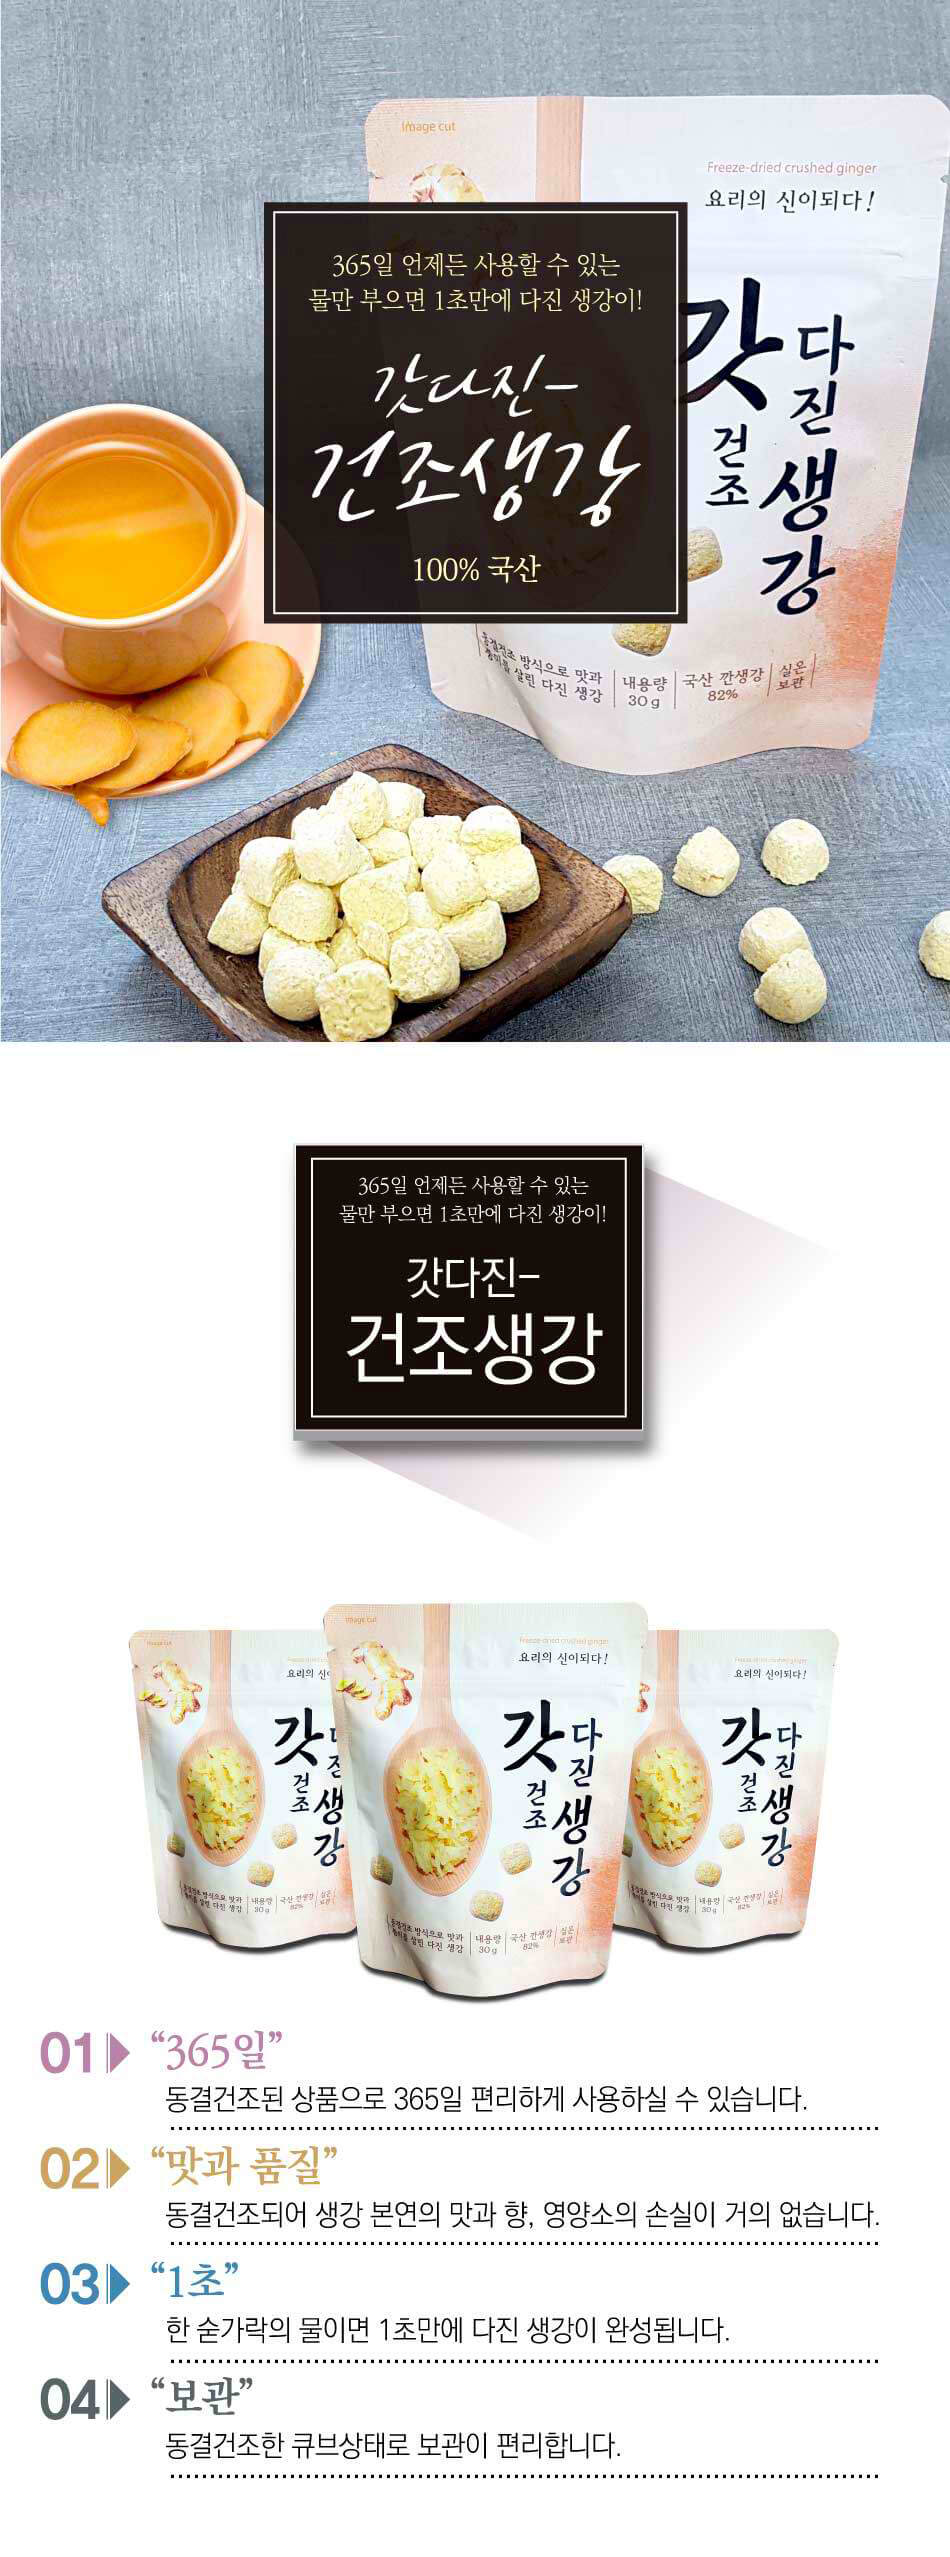 韓國食品-[Fnd] 갓다진 건조생강 30g